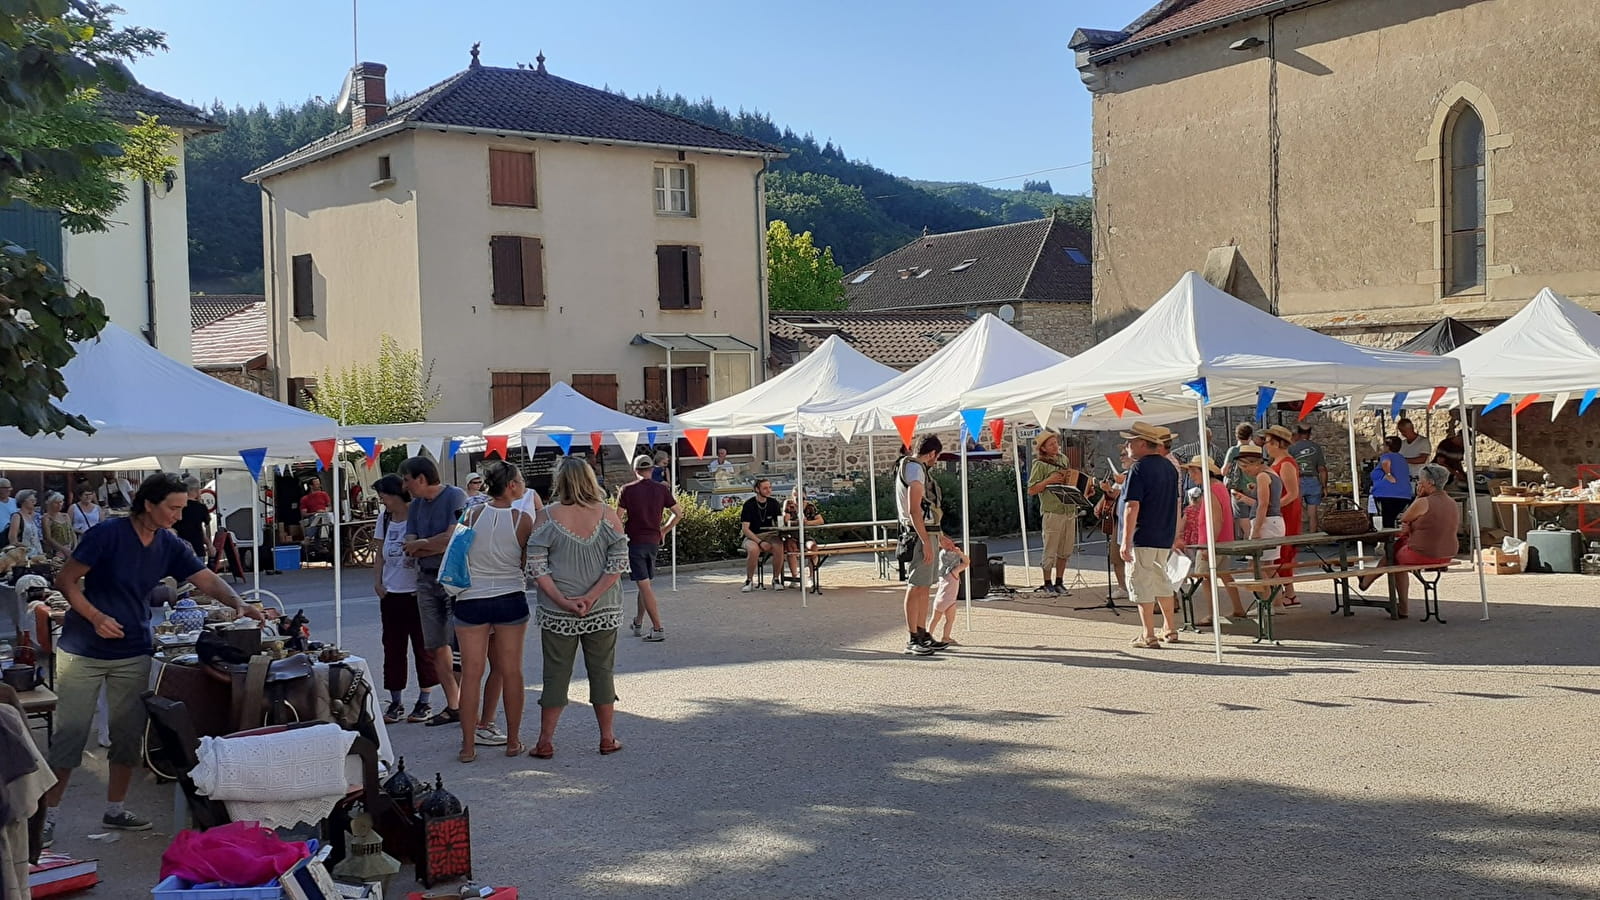 P'tit marché de Bourgvilain - Local / organic farmers' market